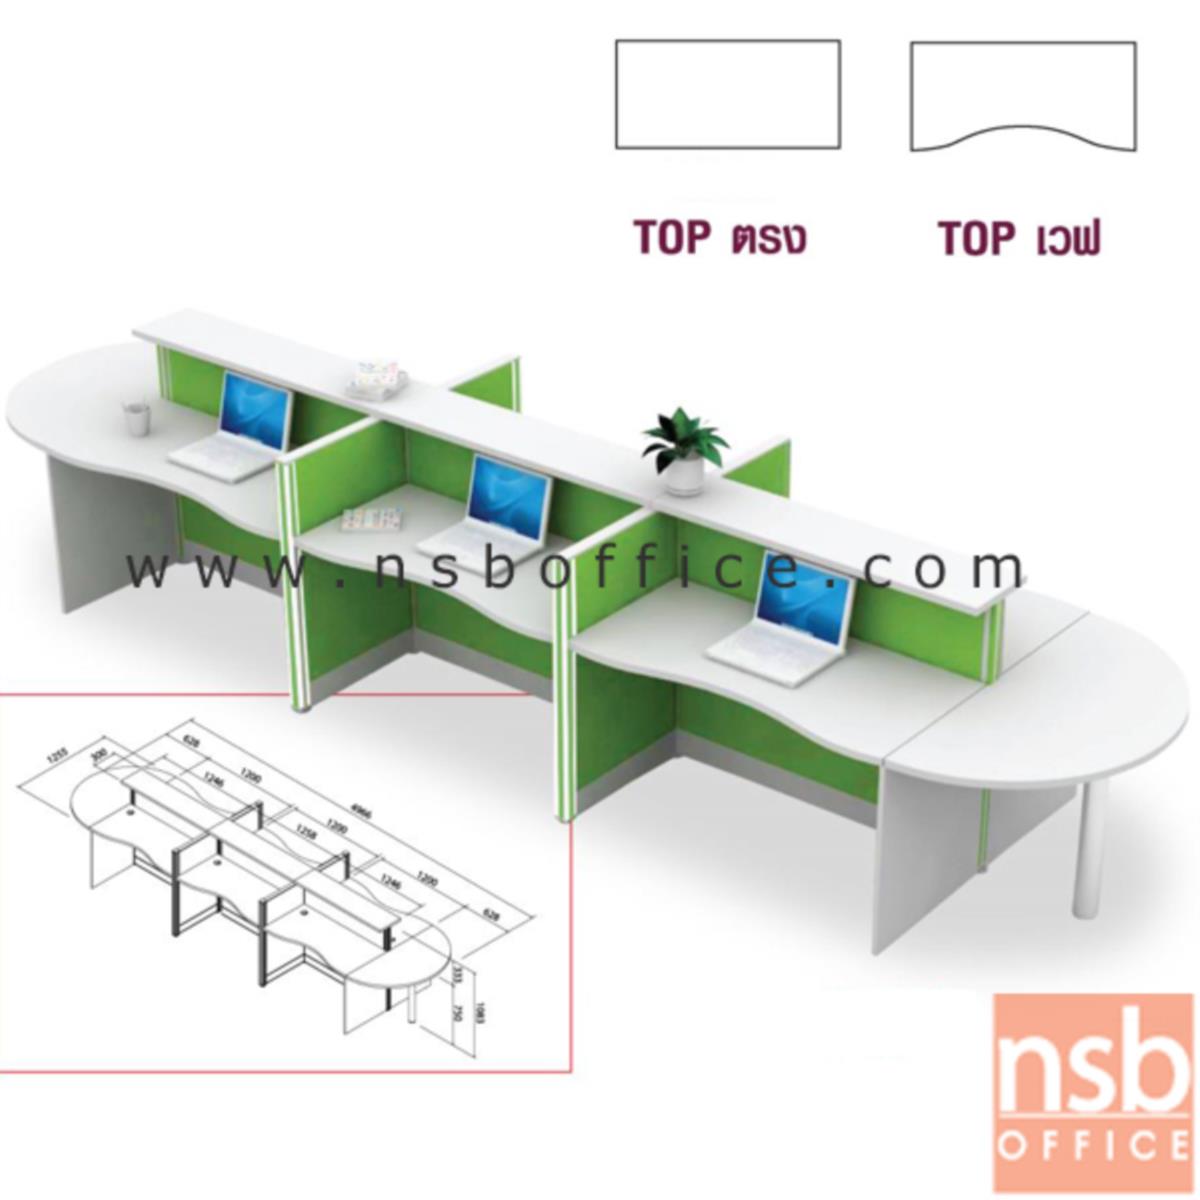 A04A055:โต๊ะทำงานกลุ่ม 6 ที่นั่ง    พร้อมที่วางของส่วนกลาง